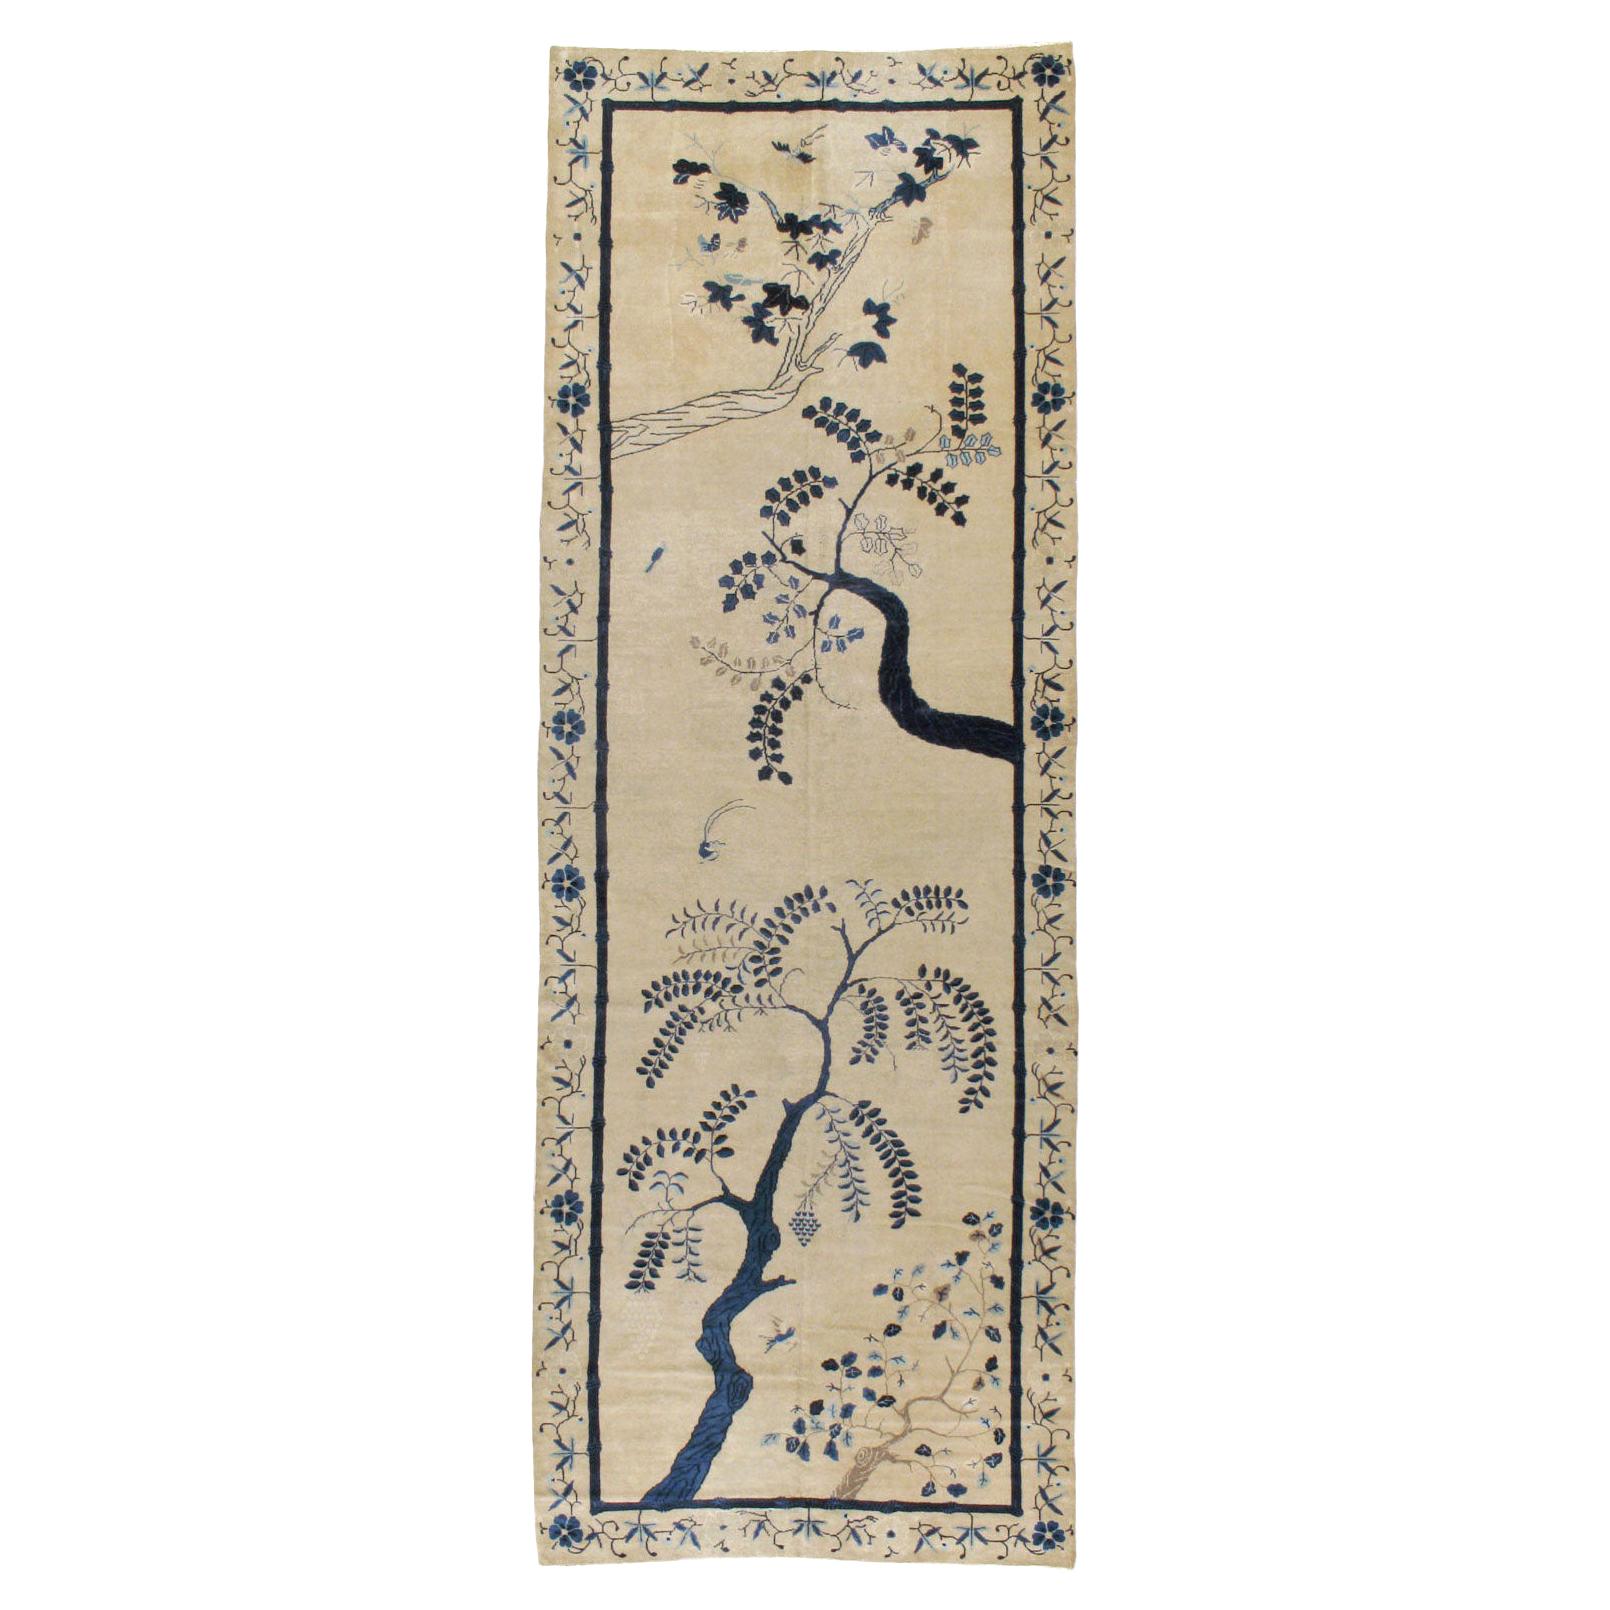 Tapis long de galerie chinois de Pékin du début du 20e siècle, fabriqué à la main, de couleur crème et bleu